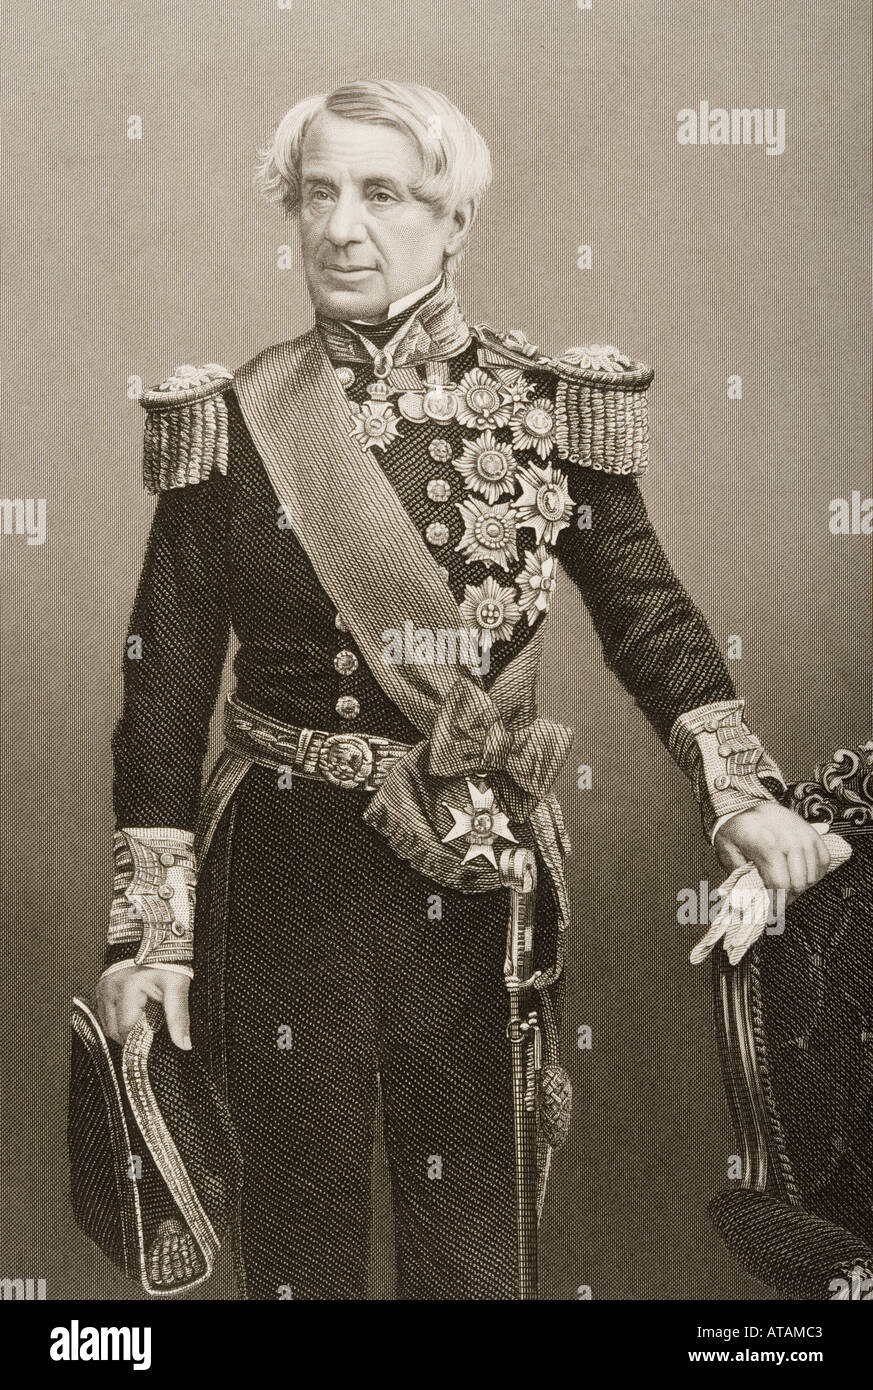 Edmund Lione, primo Baron Lyons, Signore Admiral, 1790 - 1858. Ammiraglio Inglese della Royal Navy. Foto Stock